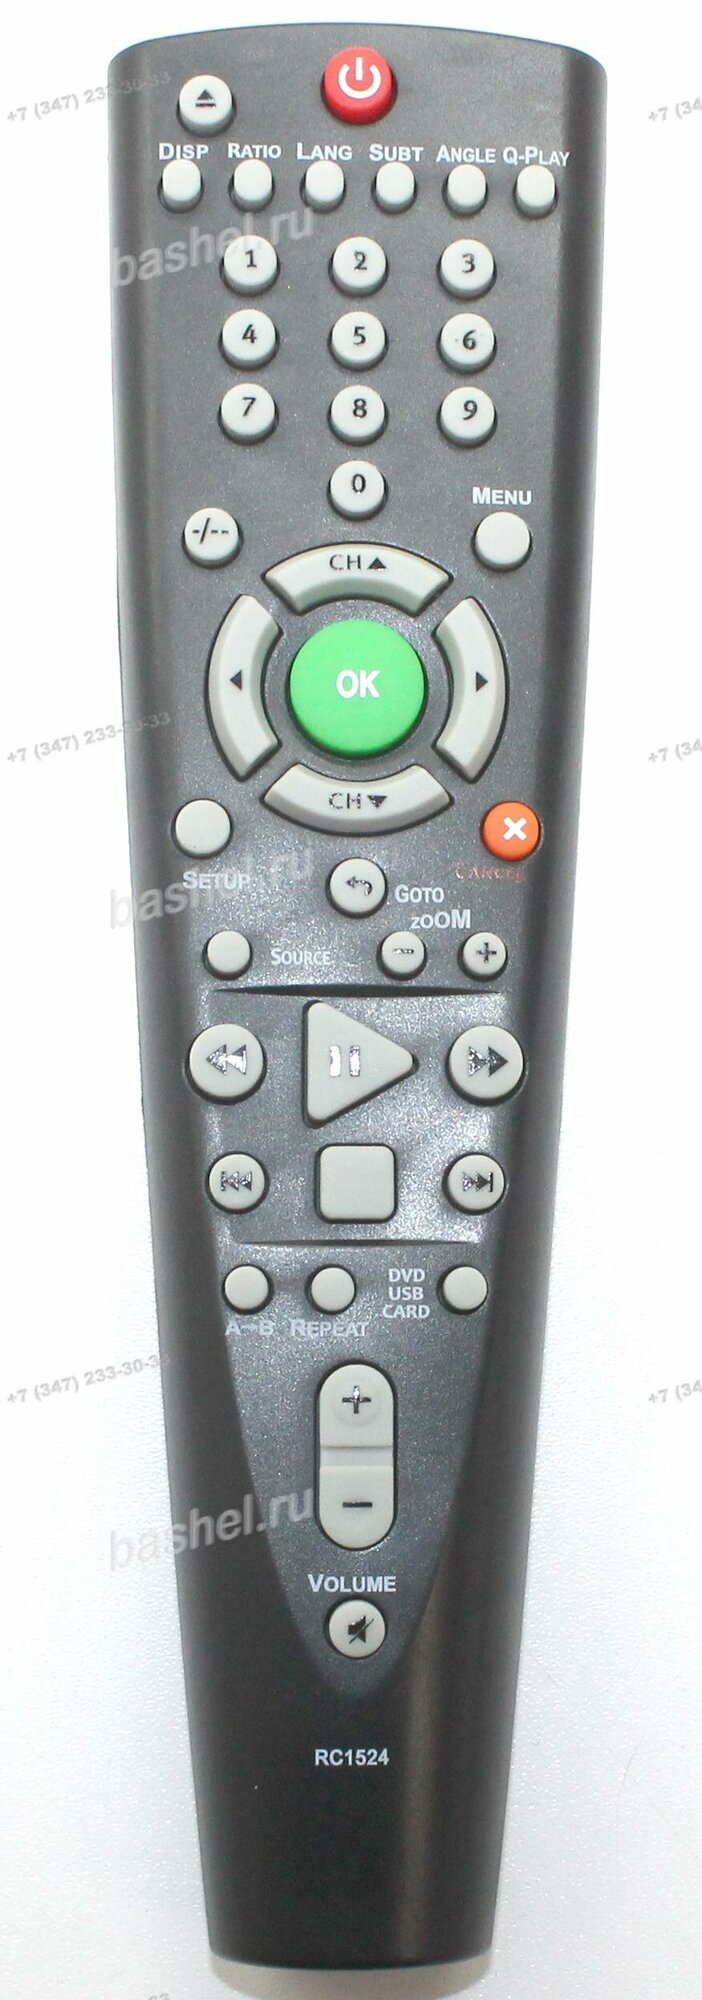 BBK RC1524 (LT120) ЖК телевизор+DVD LD1006TI, Пульт ДУ